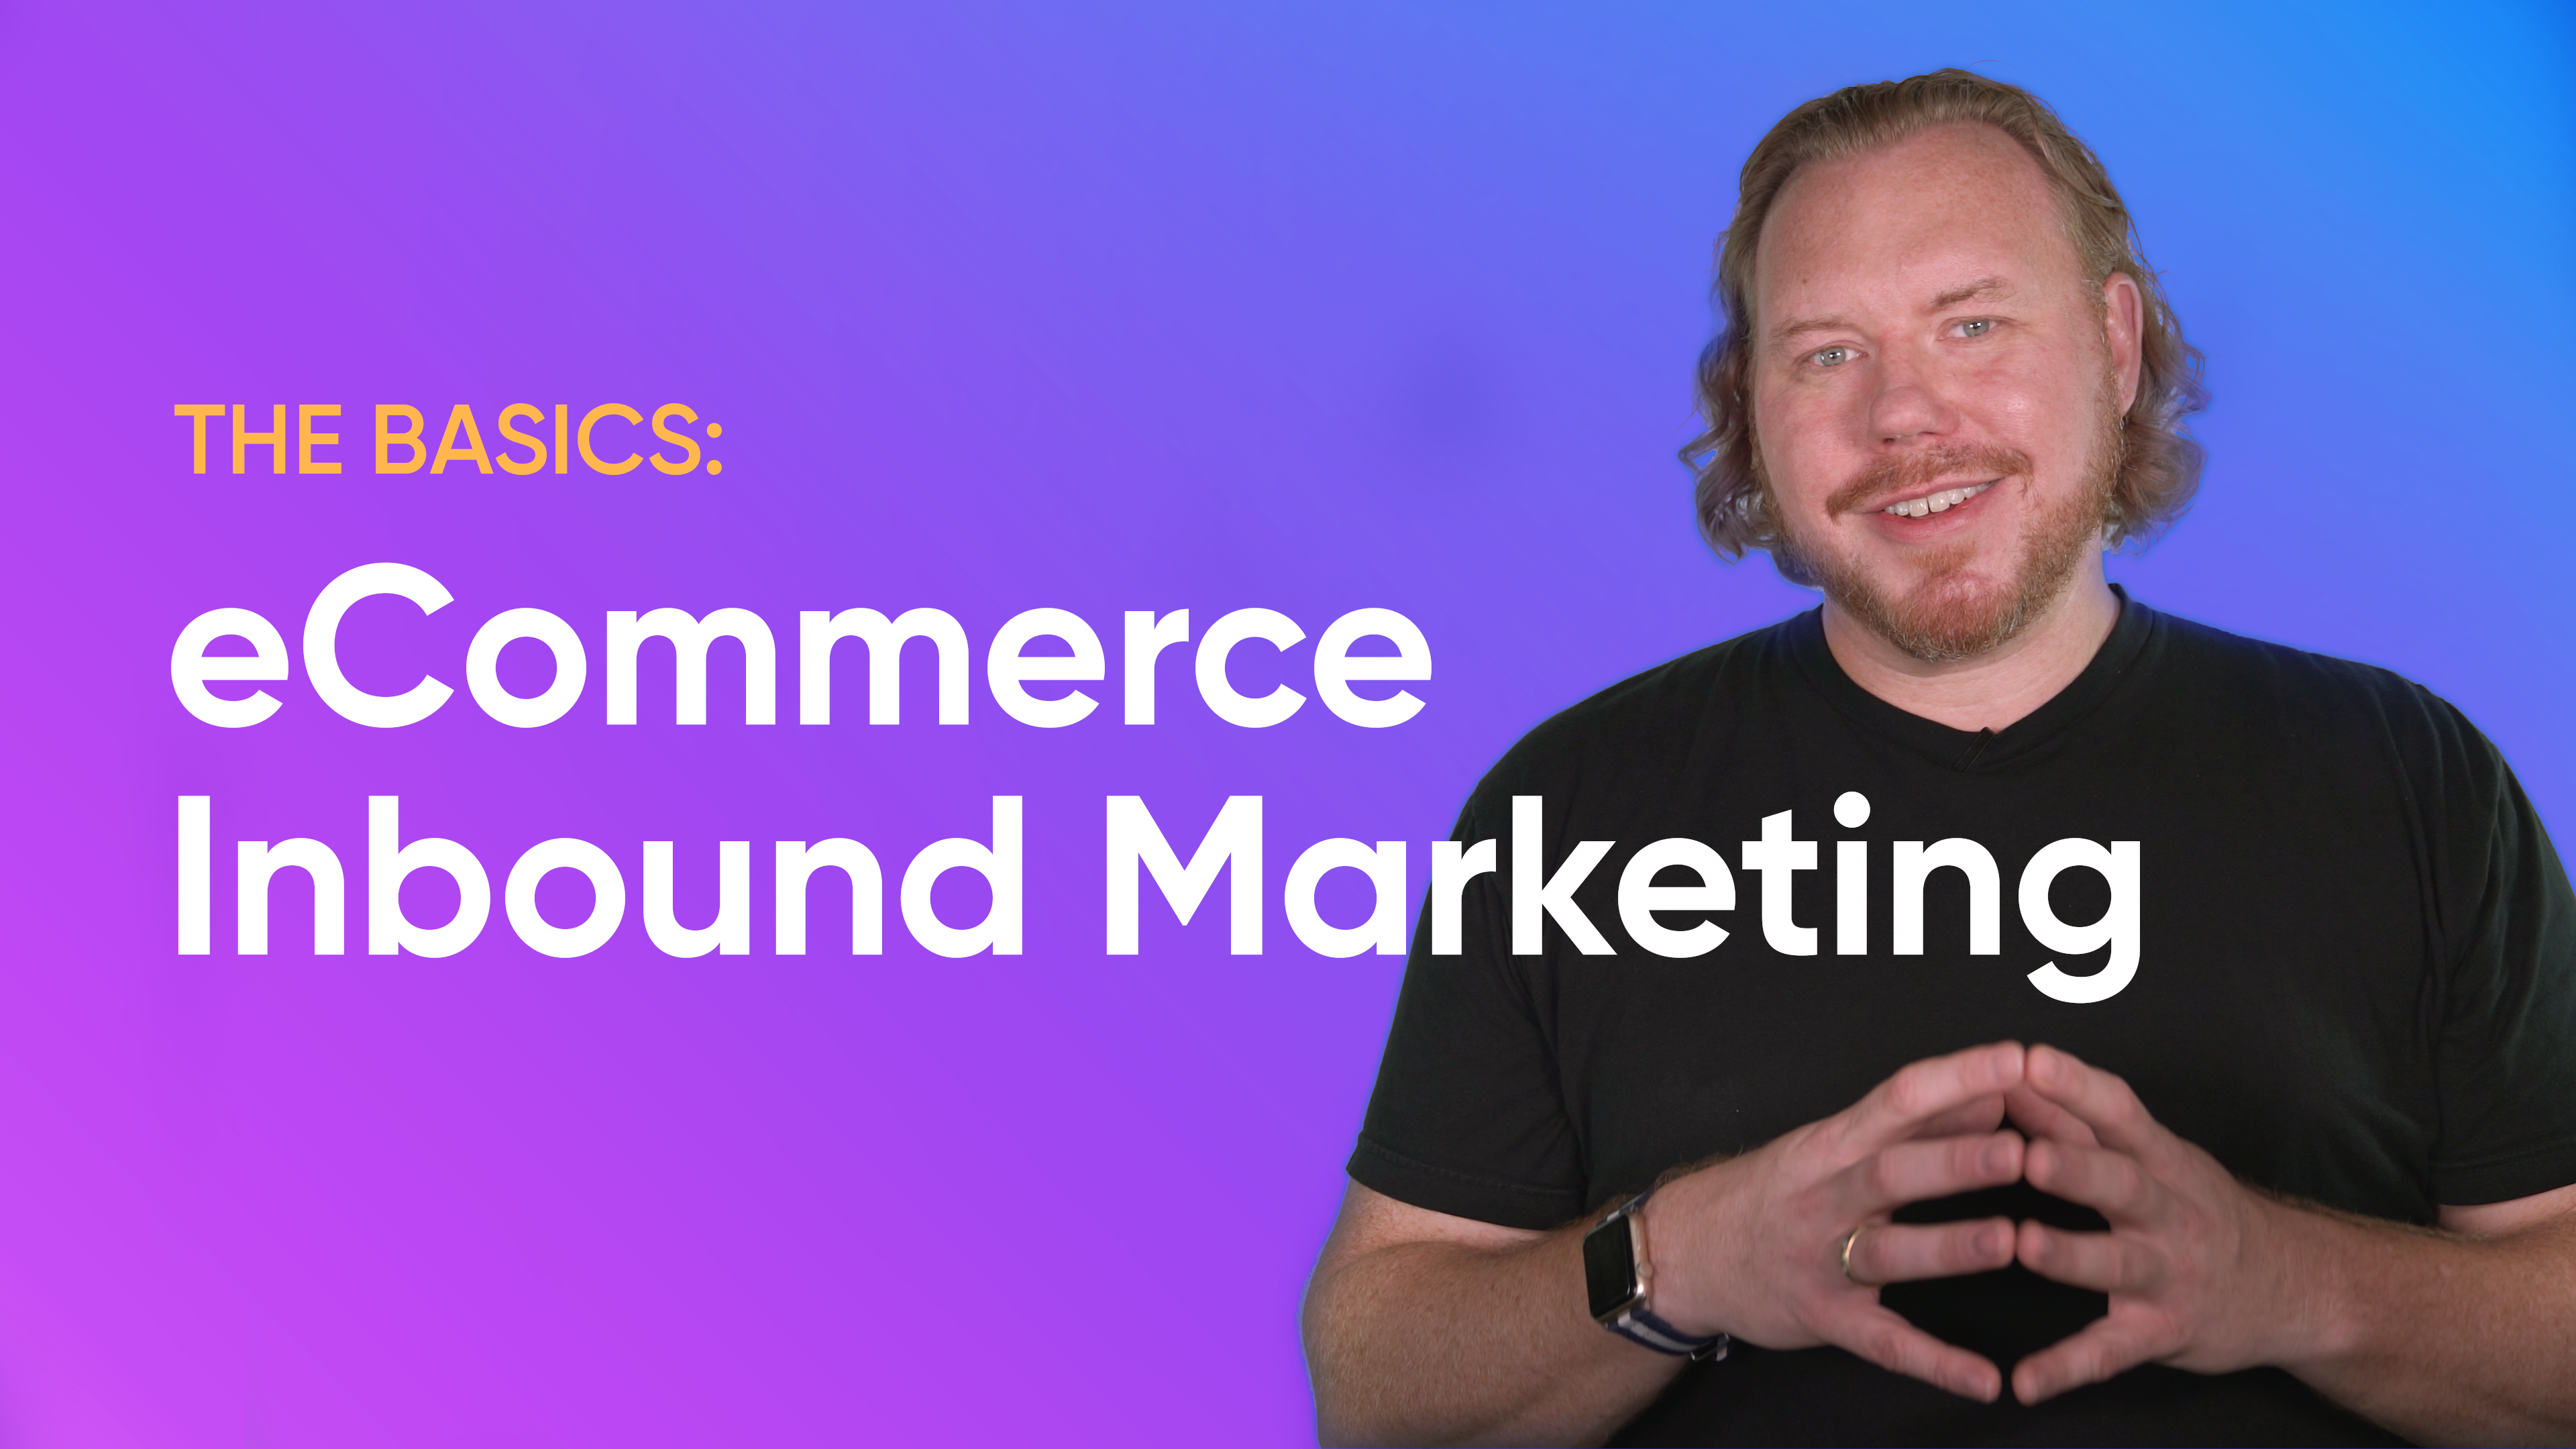 ecommerce-inbound-marketing-basics